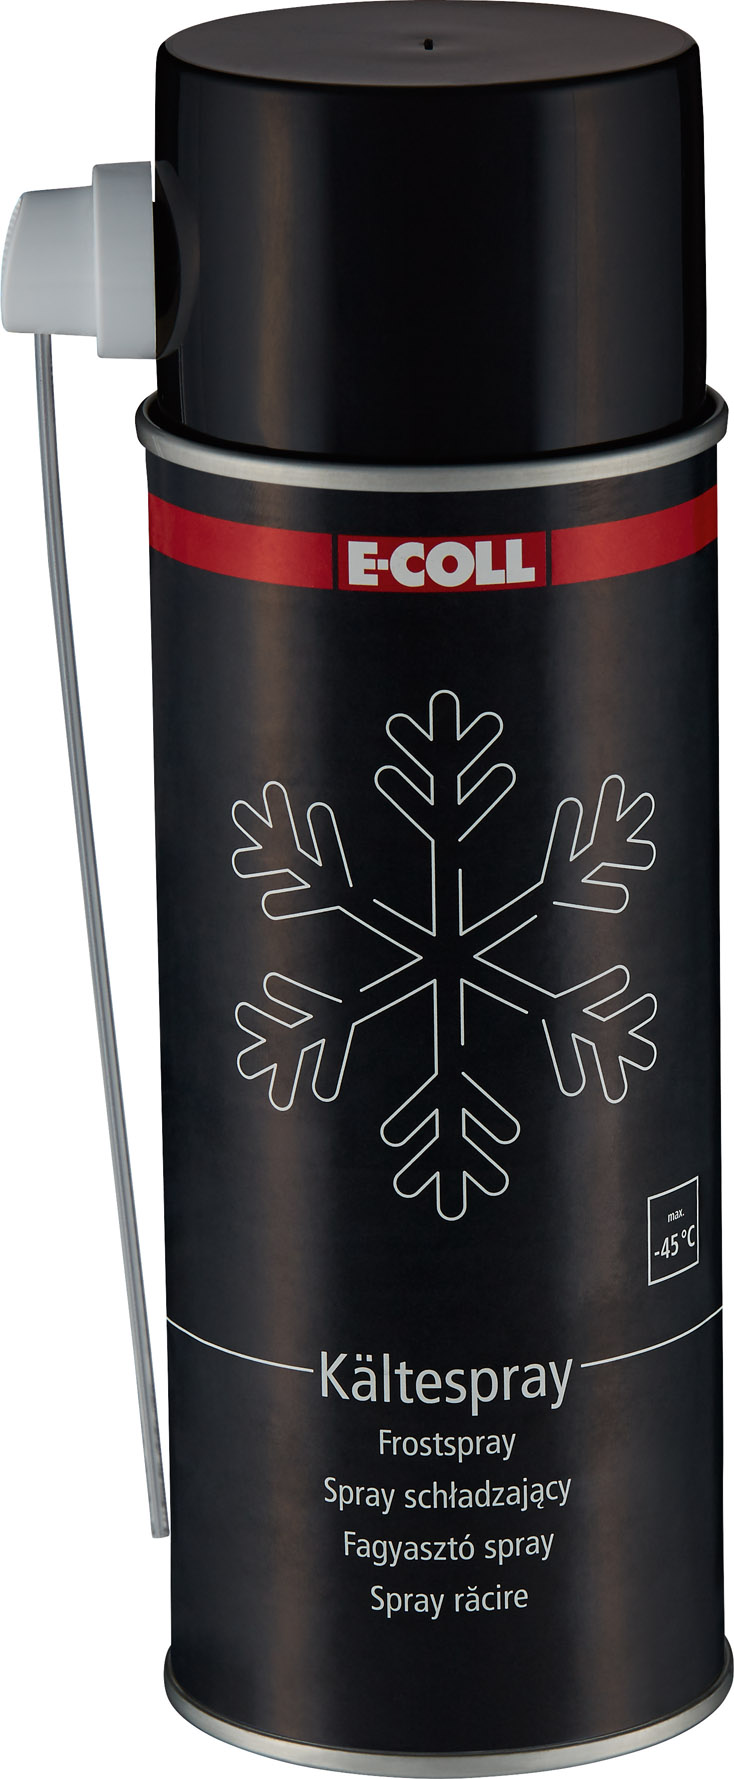 E-COLL Kältespray 400ml EE